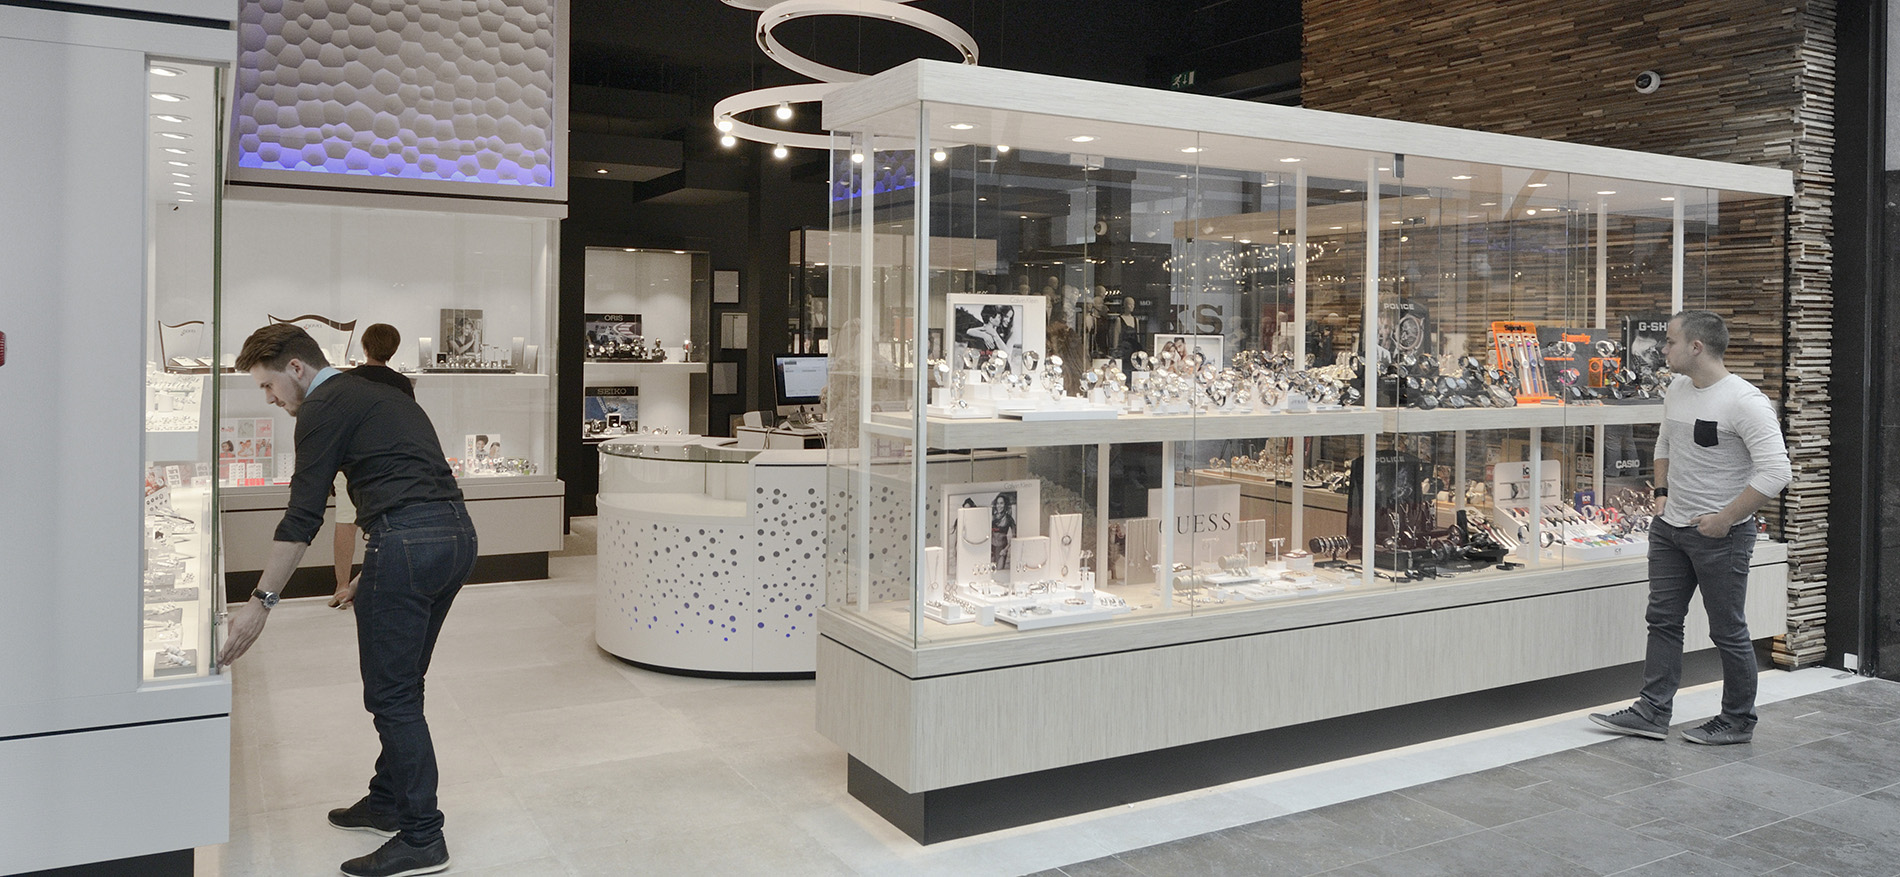 Bijouterie Laurent: Retail design of jewelry shop - 